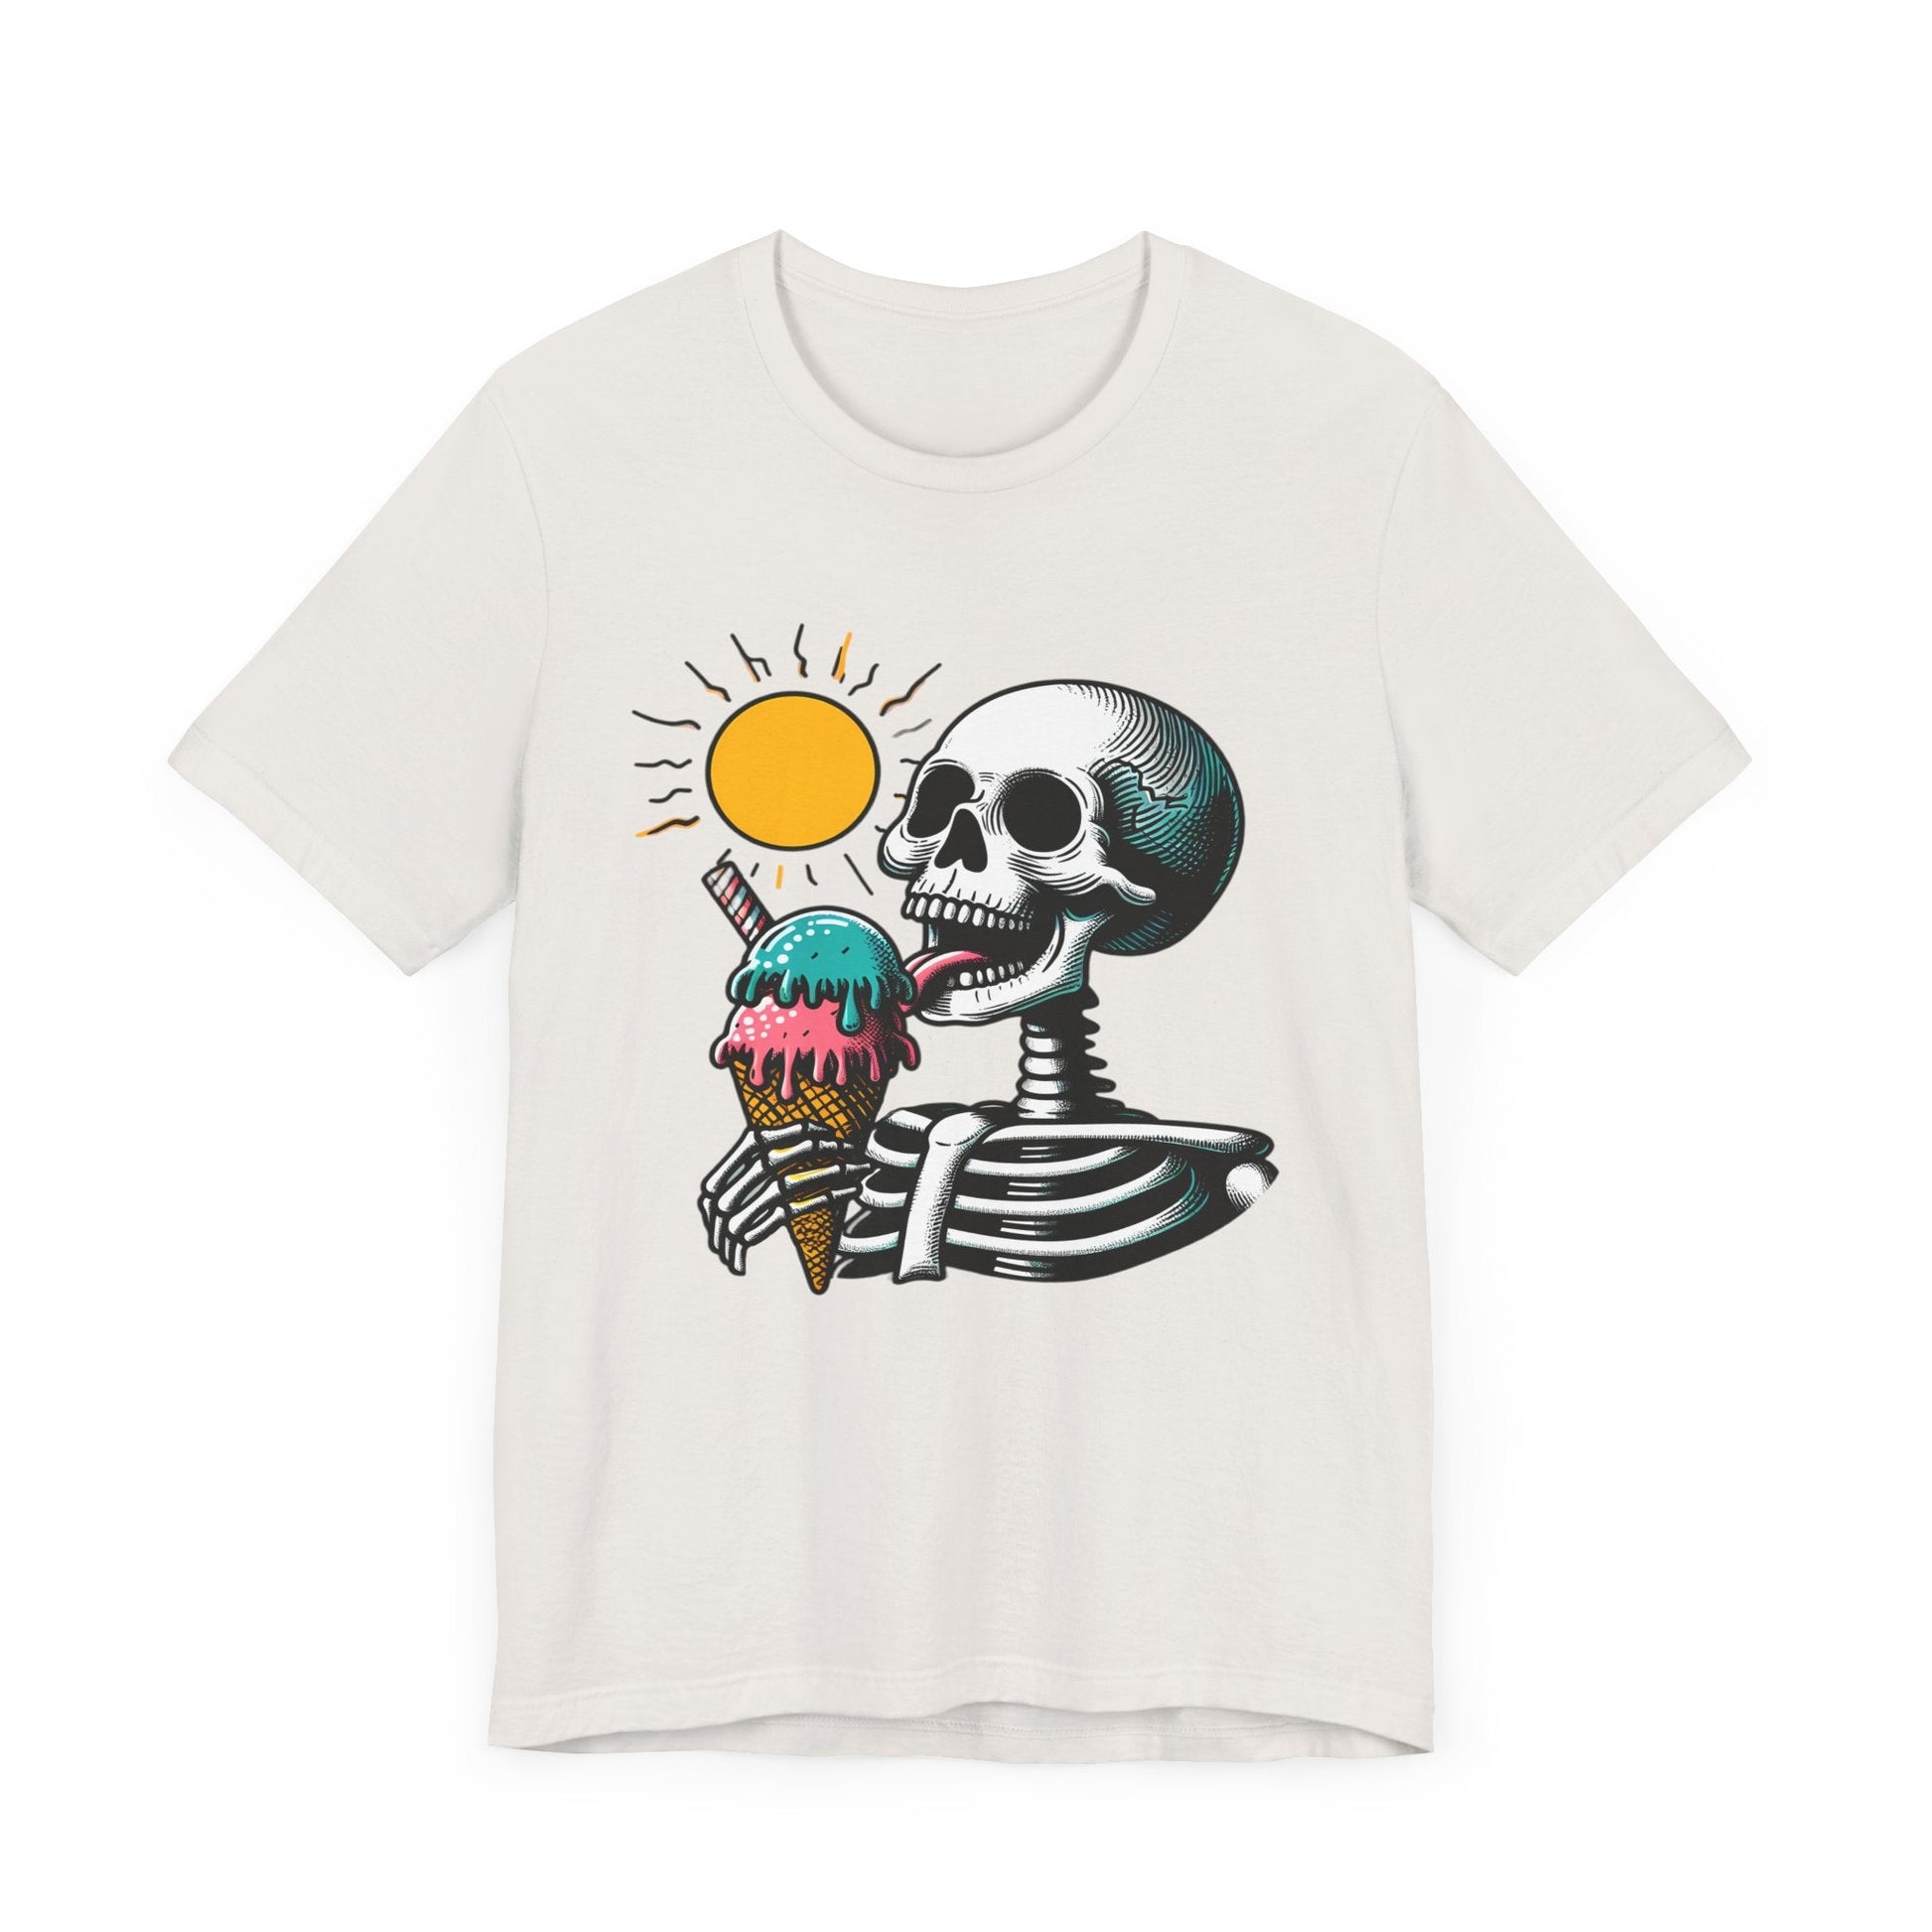 Skeleton Ice Cream Short Sleeve Tee ShirtT - ShirtVTZdesignsVintage WhiteXSclothingCottonCrew neck